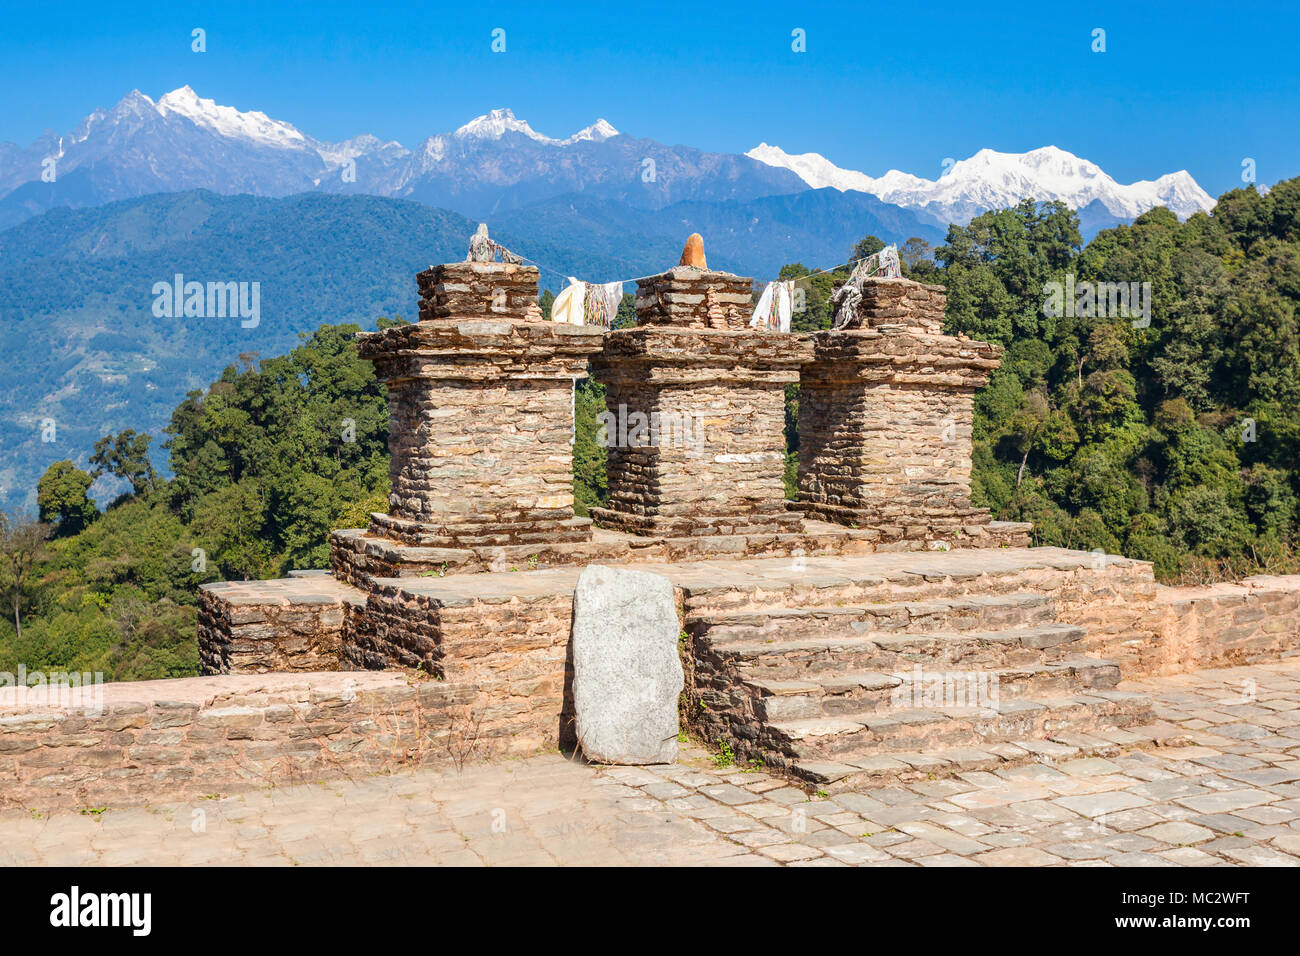 Rabdentse rovine nei pressi di ortografia, Sikkim stato in India. Rabdentse fu la seconda capitale del primo regno del Sikkim. Foto Stock